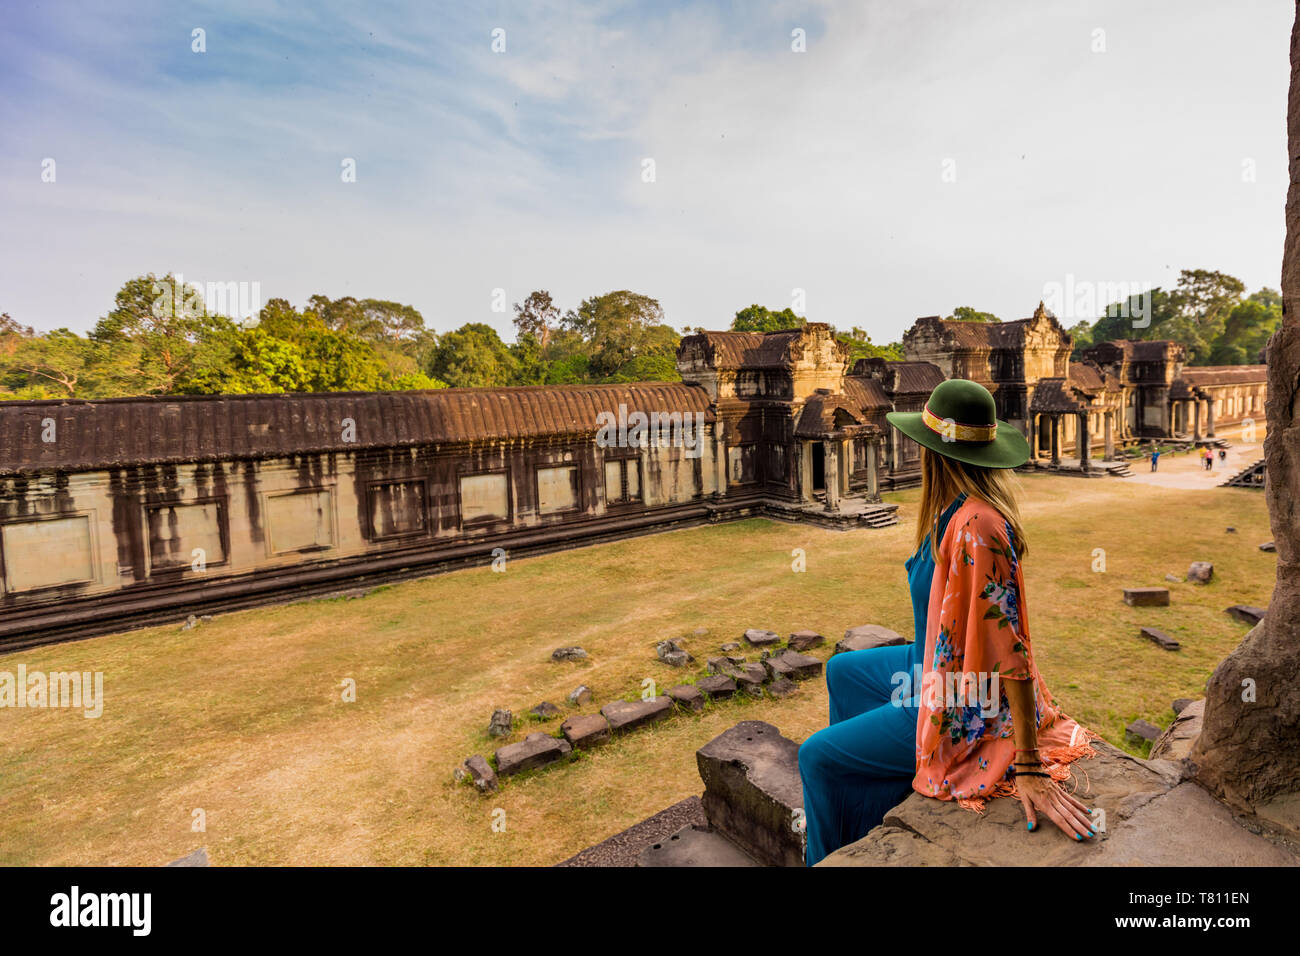 Touriste américain à Angkor Wat temples, Angkor, Site du patrimoine mondial de l'UNESCO, Siem Reap, Cambodge, Indochine, Asie du Sud-Est, l'Asie Banque D'Images